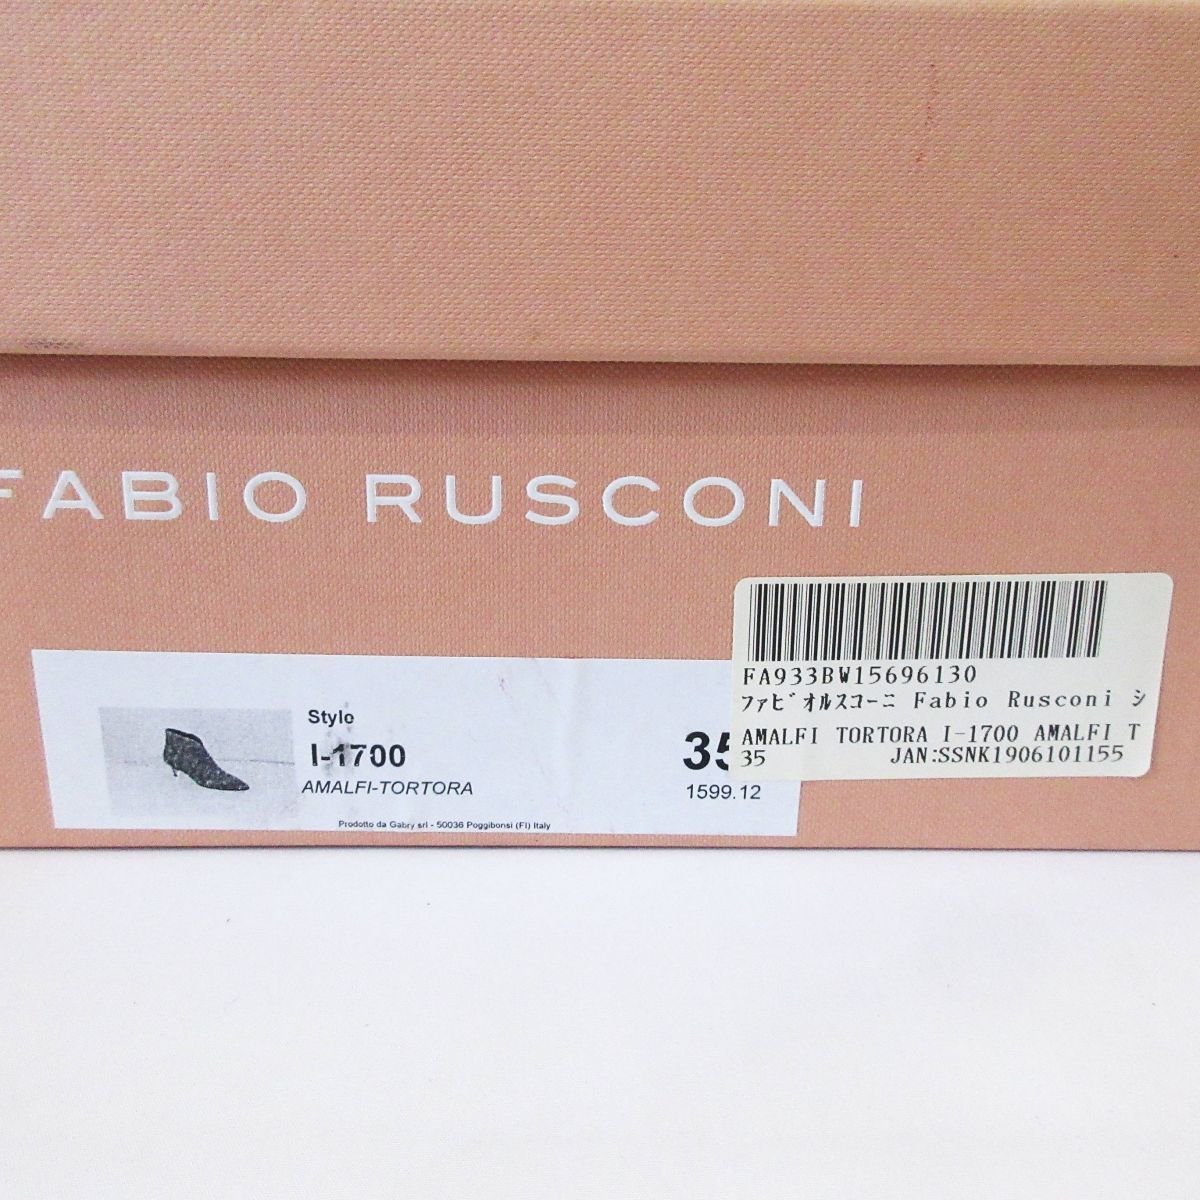  прекрасный товар FABIO RUSCONI fabio rusko-ni замша po Inte dotu короткие сапоги ботиночки размер 35 примерно 22.5cm серый ju серия × серебряный 